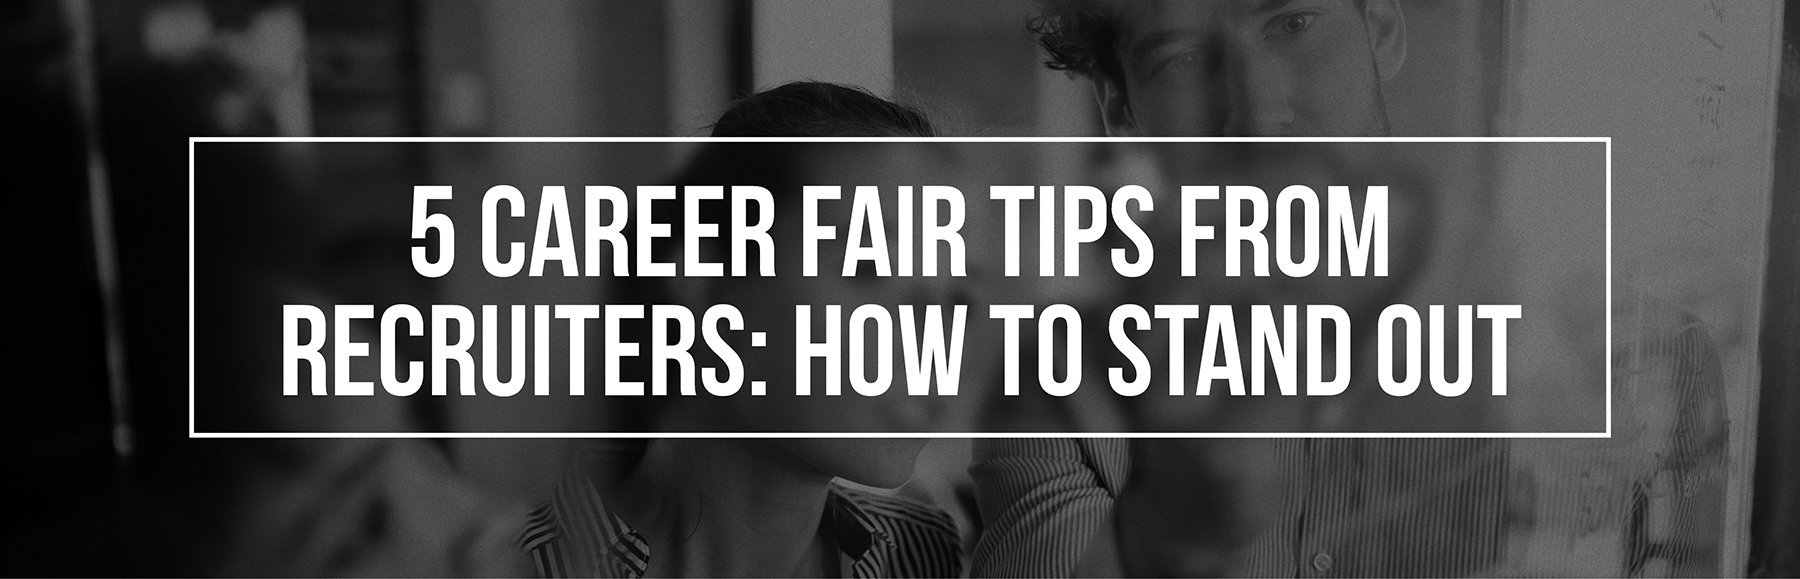 5-career-fair-tips